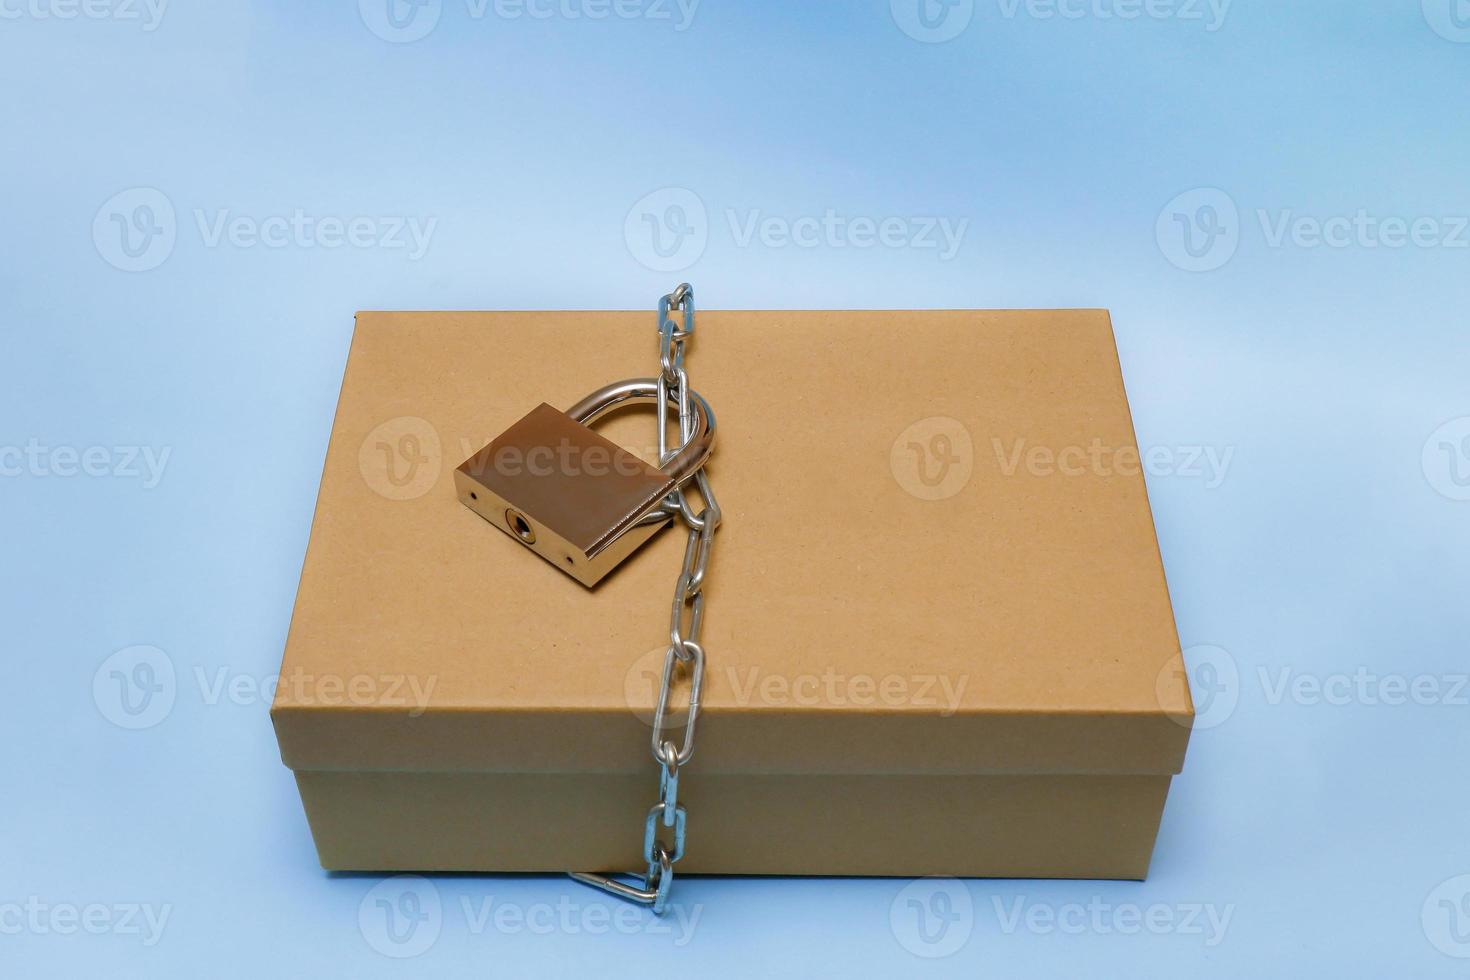 caixa de artesanato embrulhada com uma corrente e trancada, proibição, tabu foto